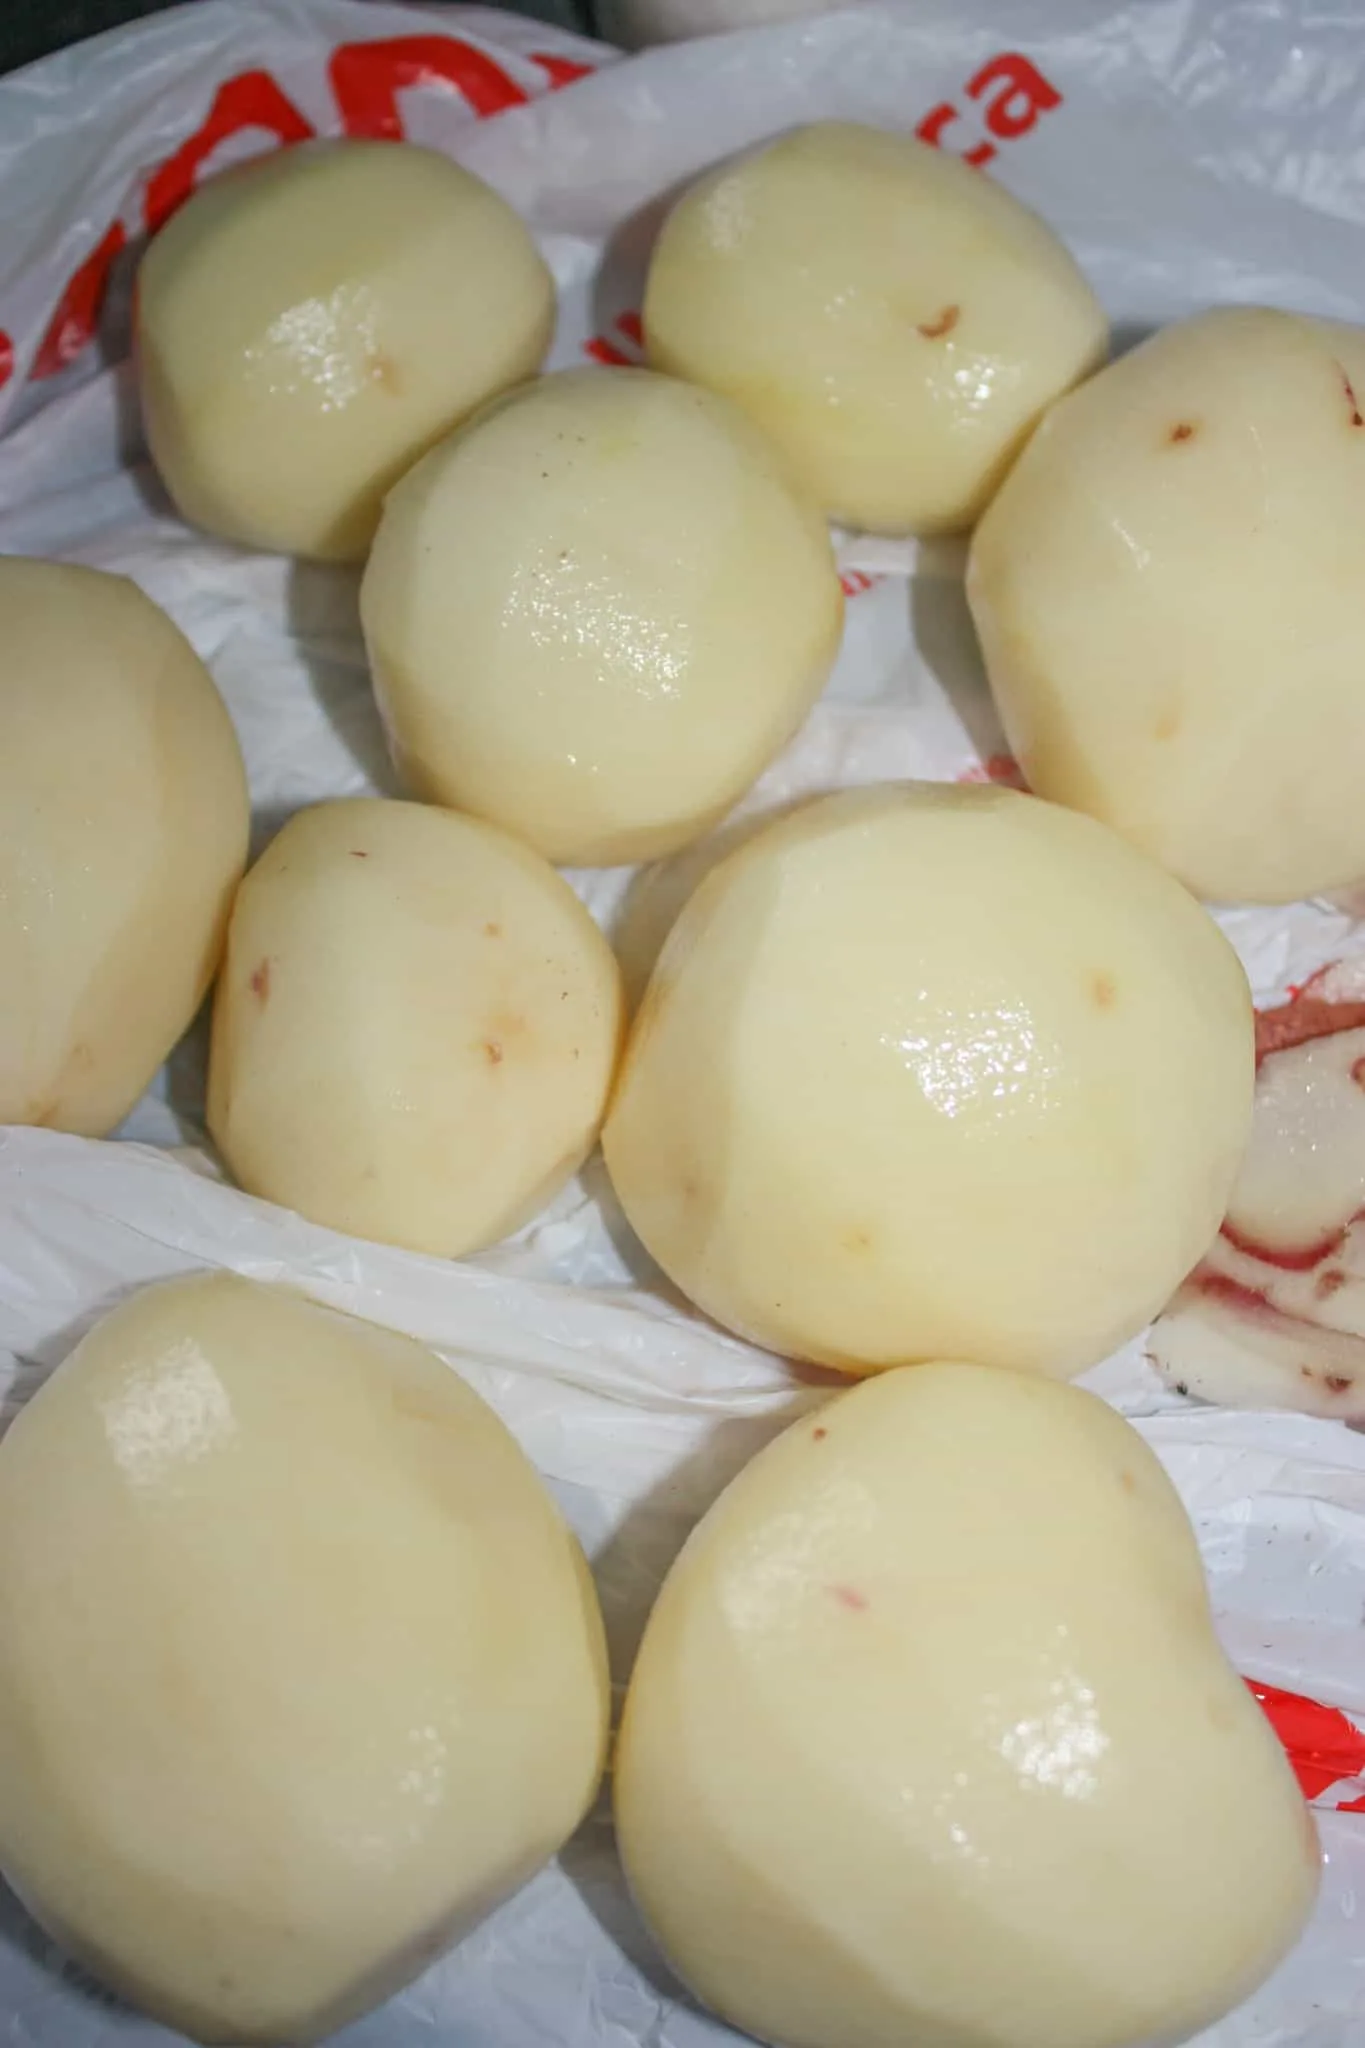 Peeling the potatoes.